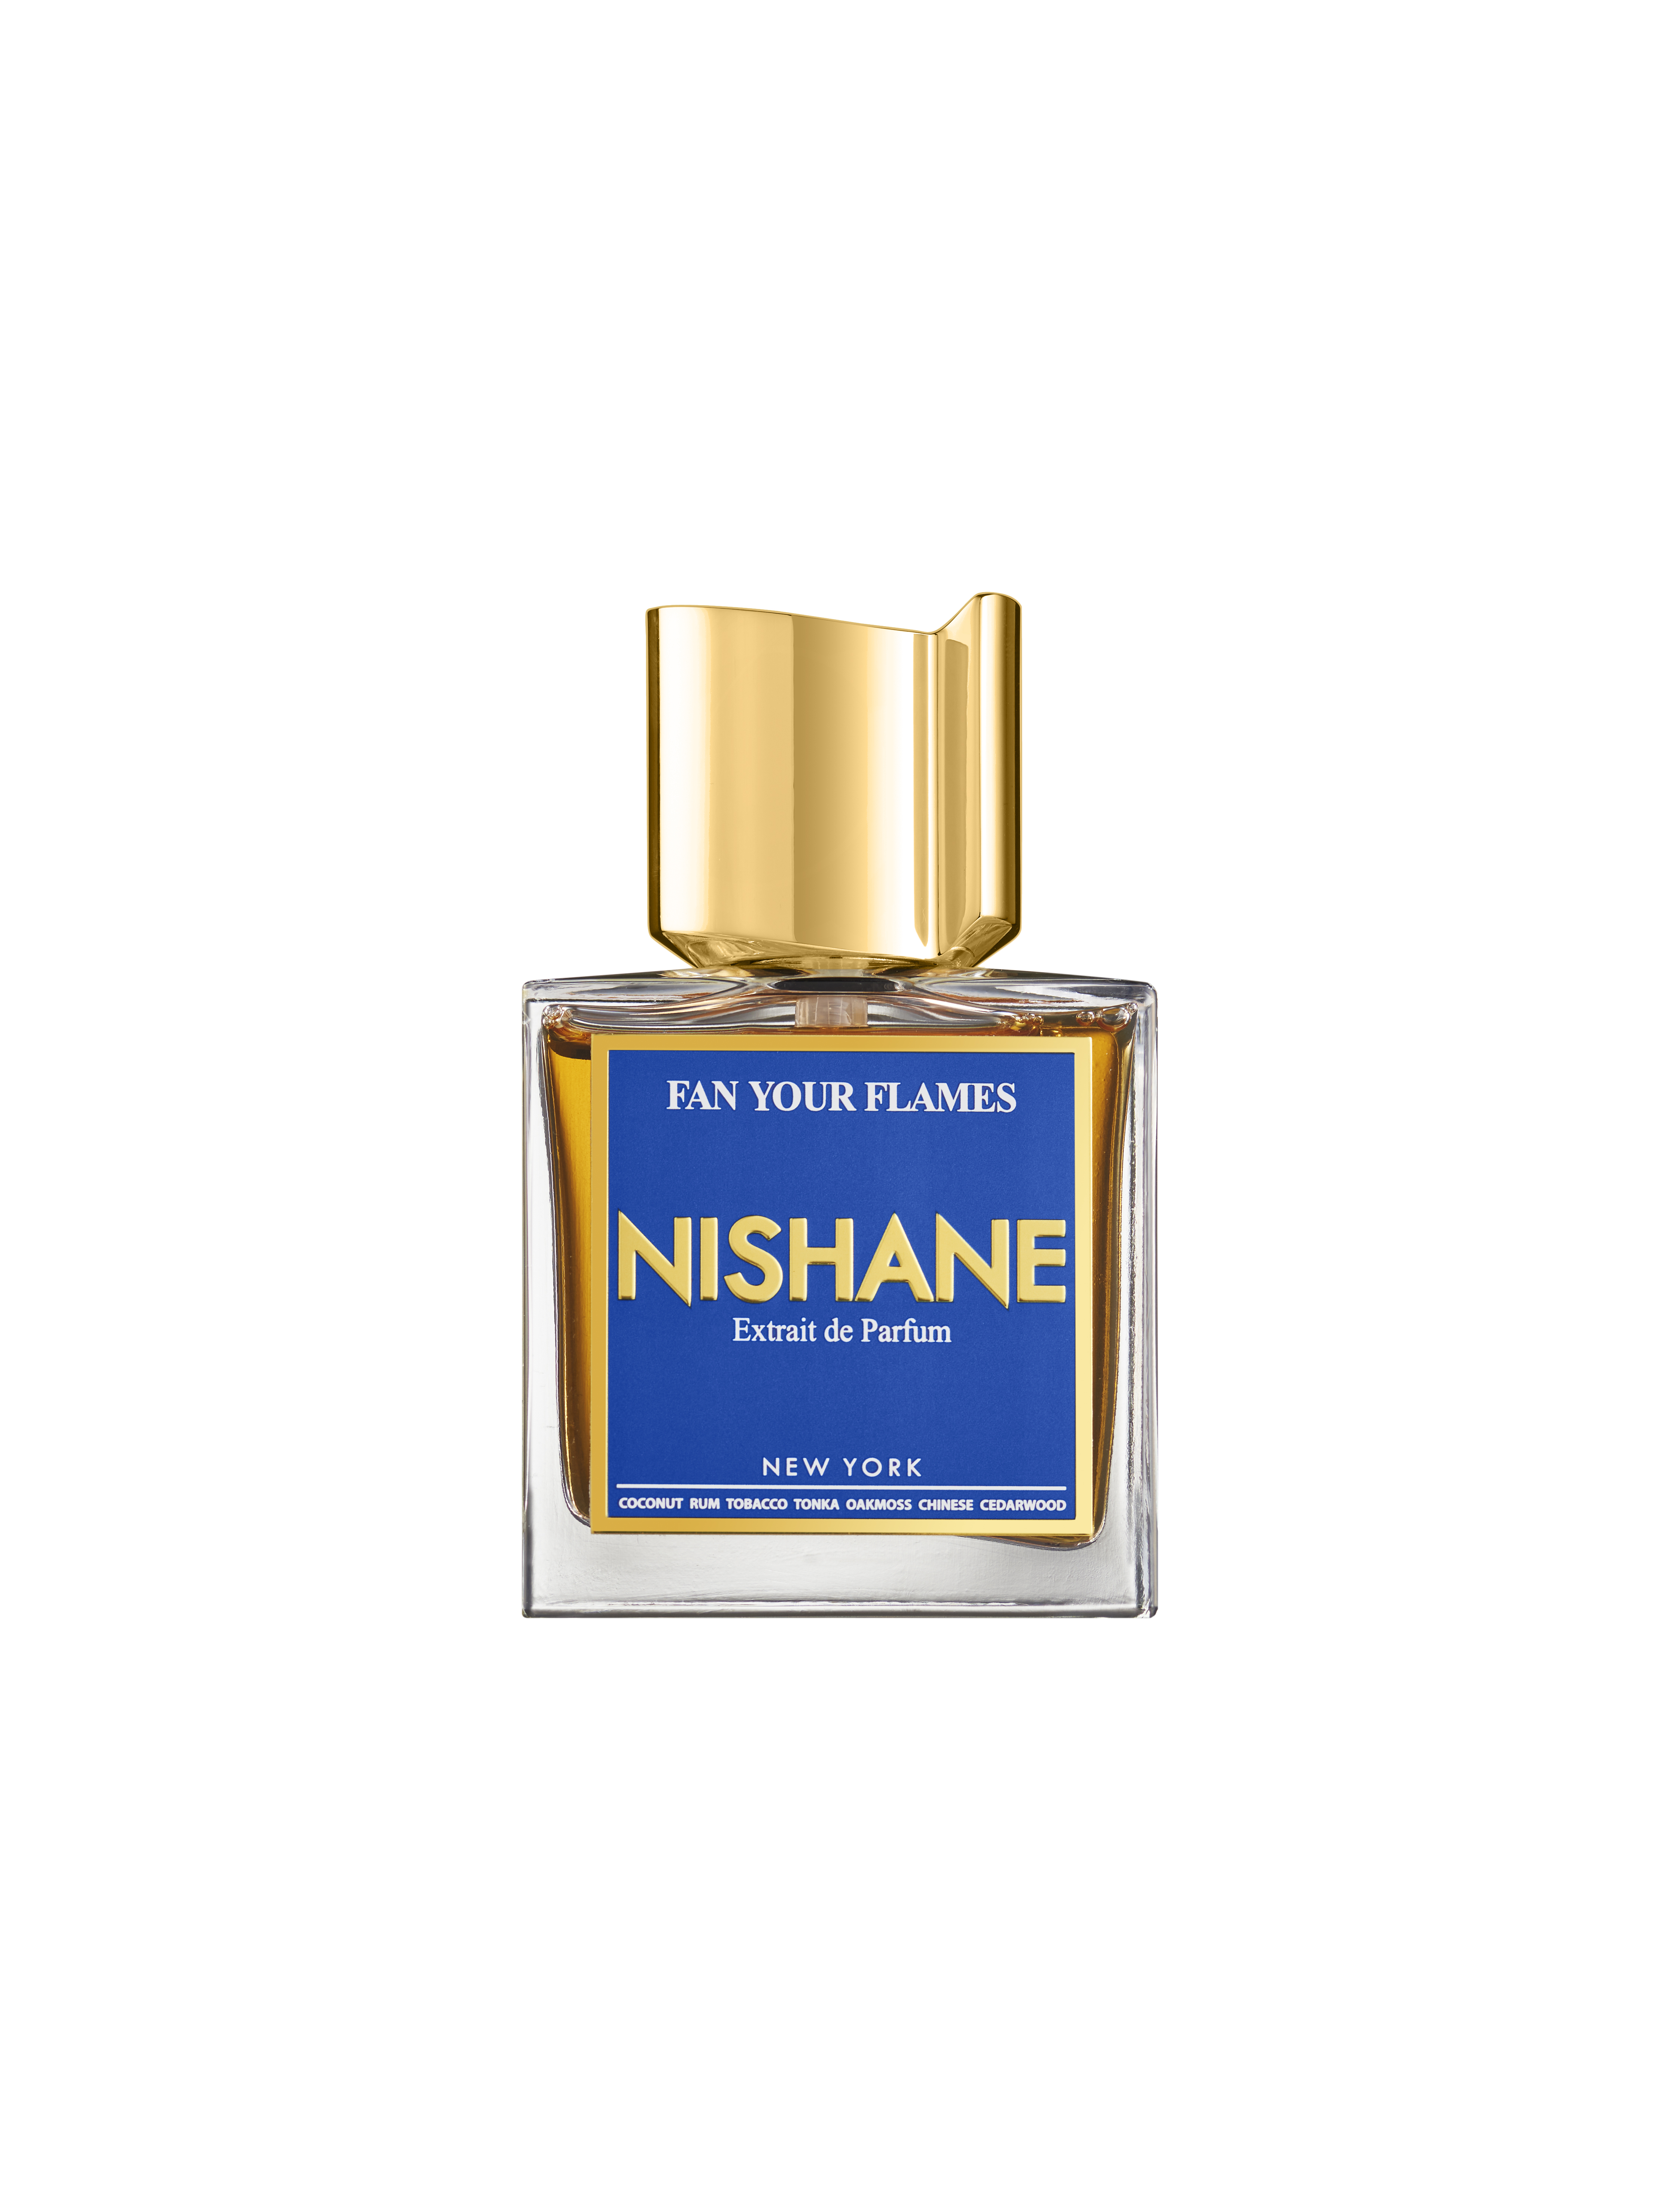 Nishane - Fan Your Flames - Extrait de Parfum 50 ml